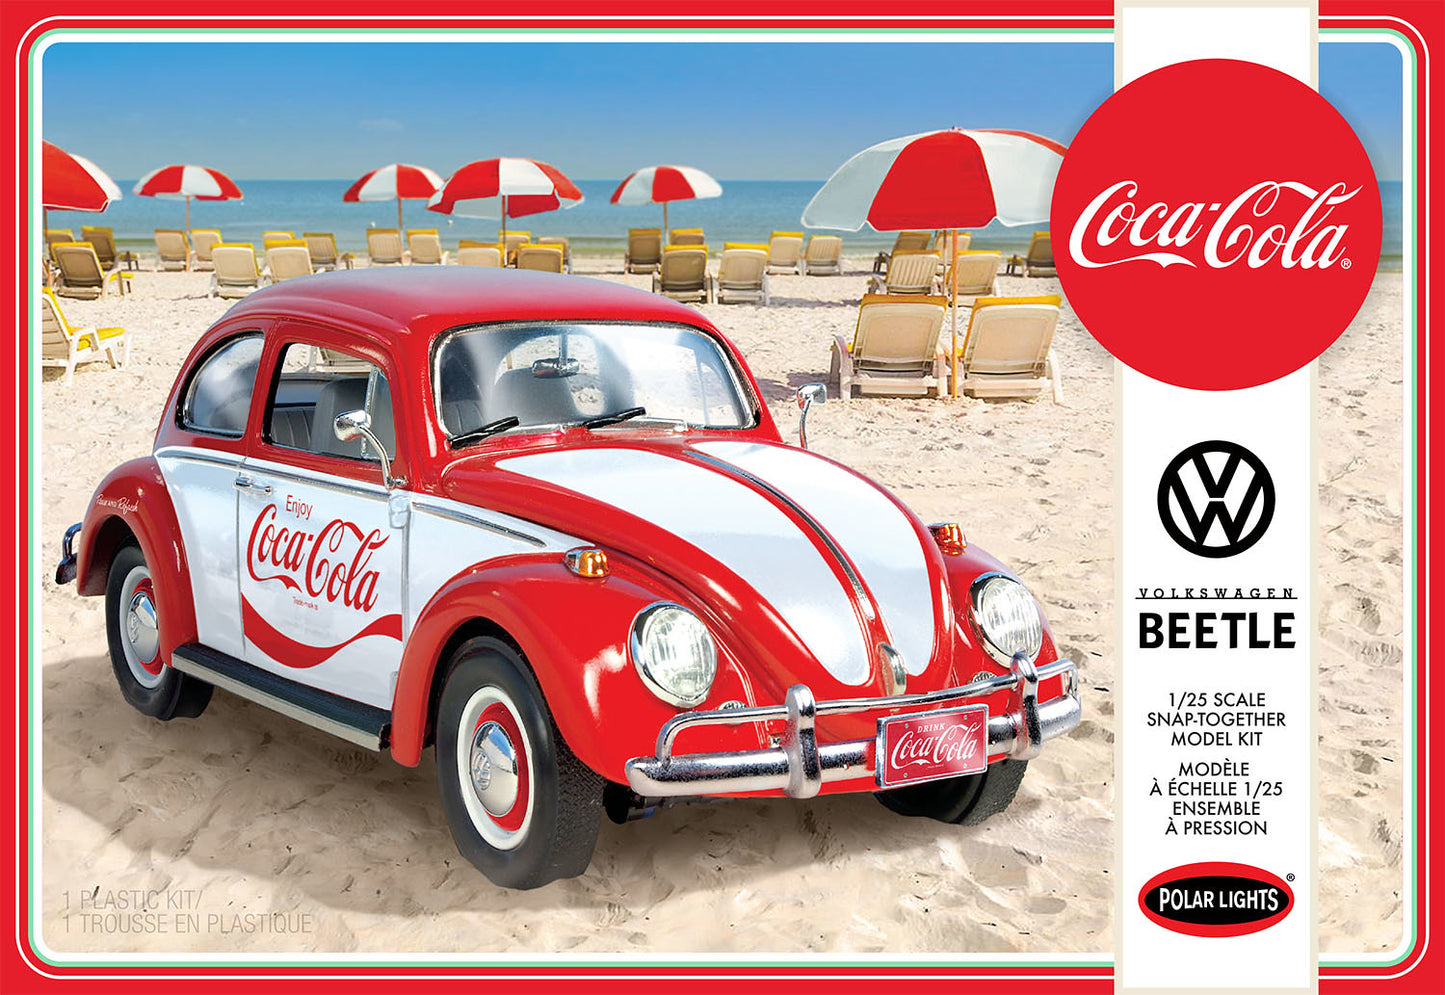 Volkswagen Beetle 2T Coca-Cola 1/25